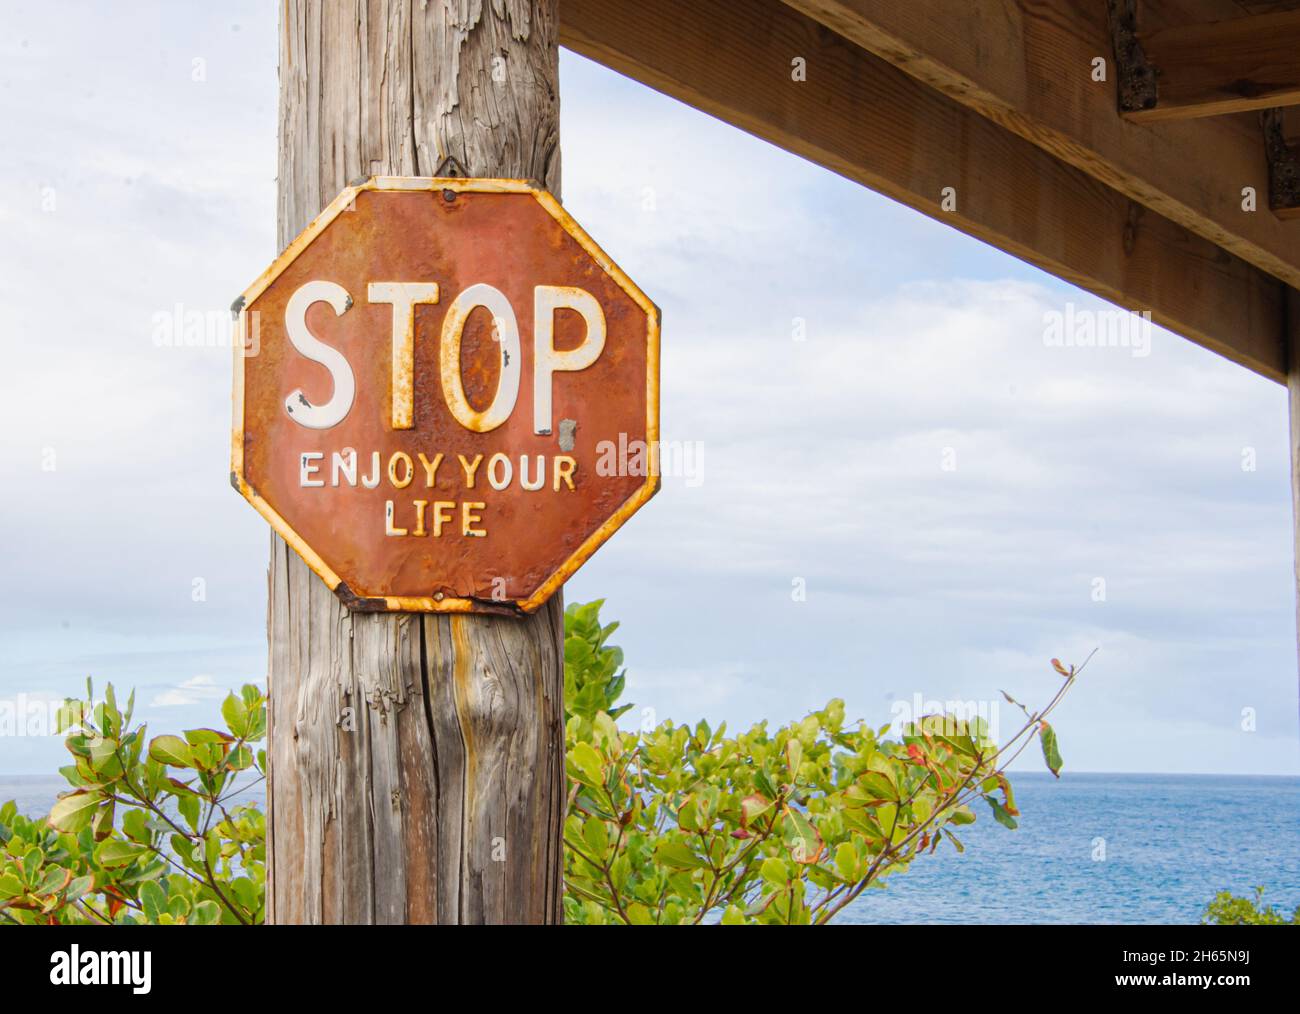 Un cartel octogonal de Stop gastado dice 'STOP Disfruta de tu vida' y está unido a un poste con el azul Mar Caribe en el fondo. Rincón, Puerto Rico. Foto de stock